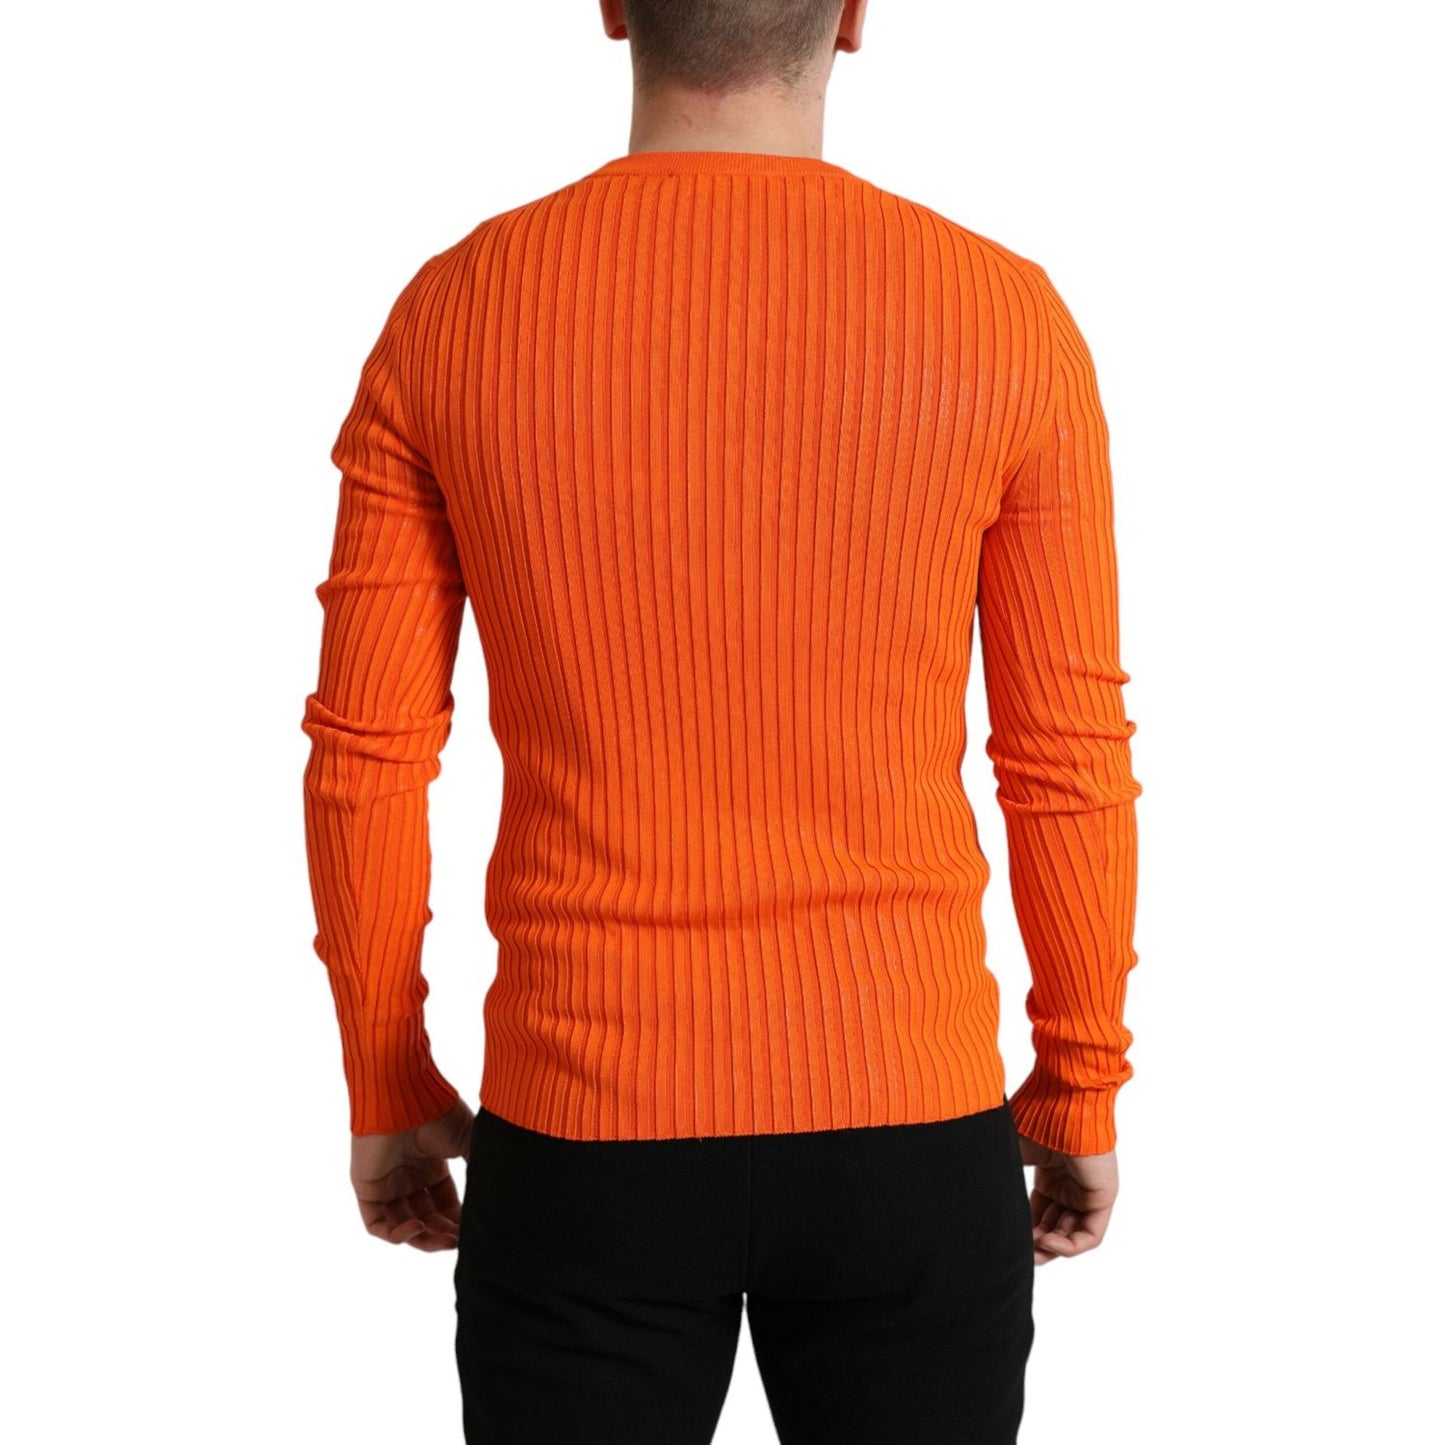 Dolce & GabbanaSleek Sunset Orange Knitted Pullover SweaterMcRichard Designer Brands£779.00